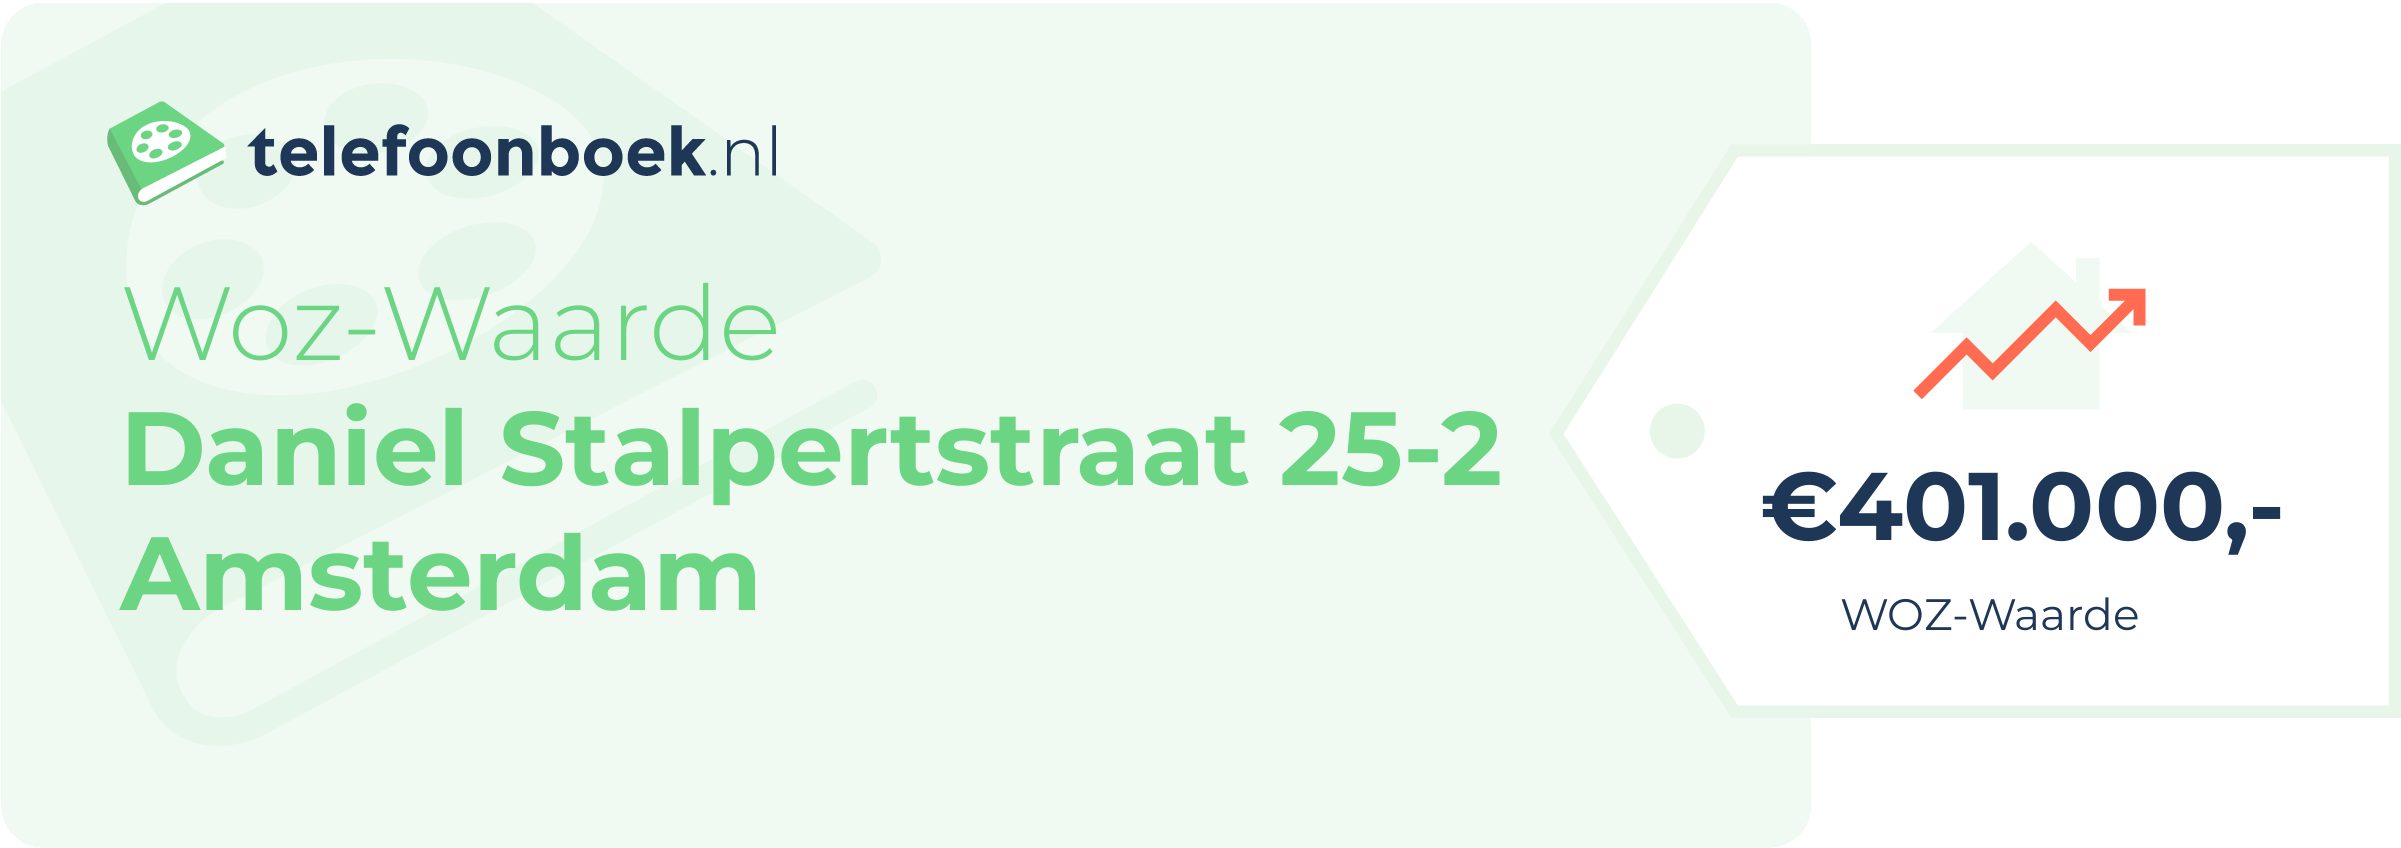 WOZ-waarde Daniel Stalpertstraat 25-2 Amsterdam